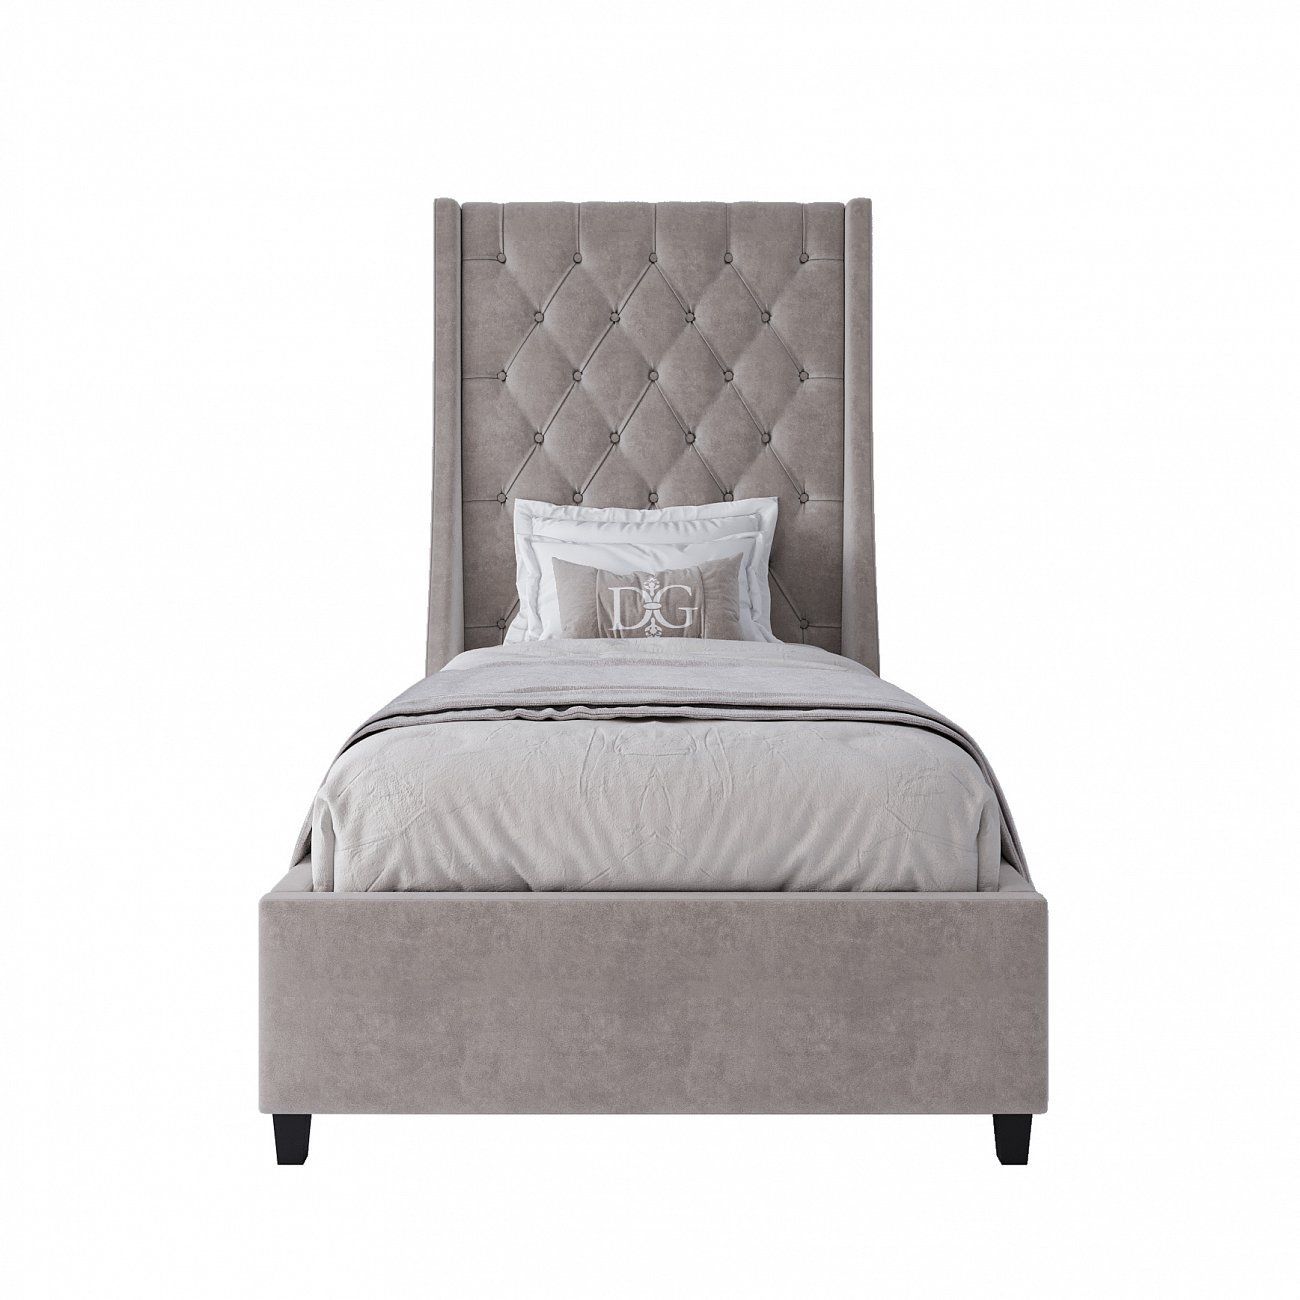 Single bed 90x200 Ada beige-gray MR